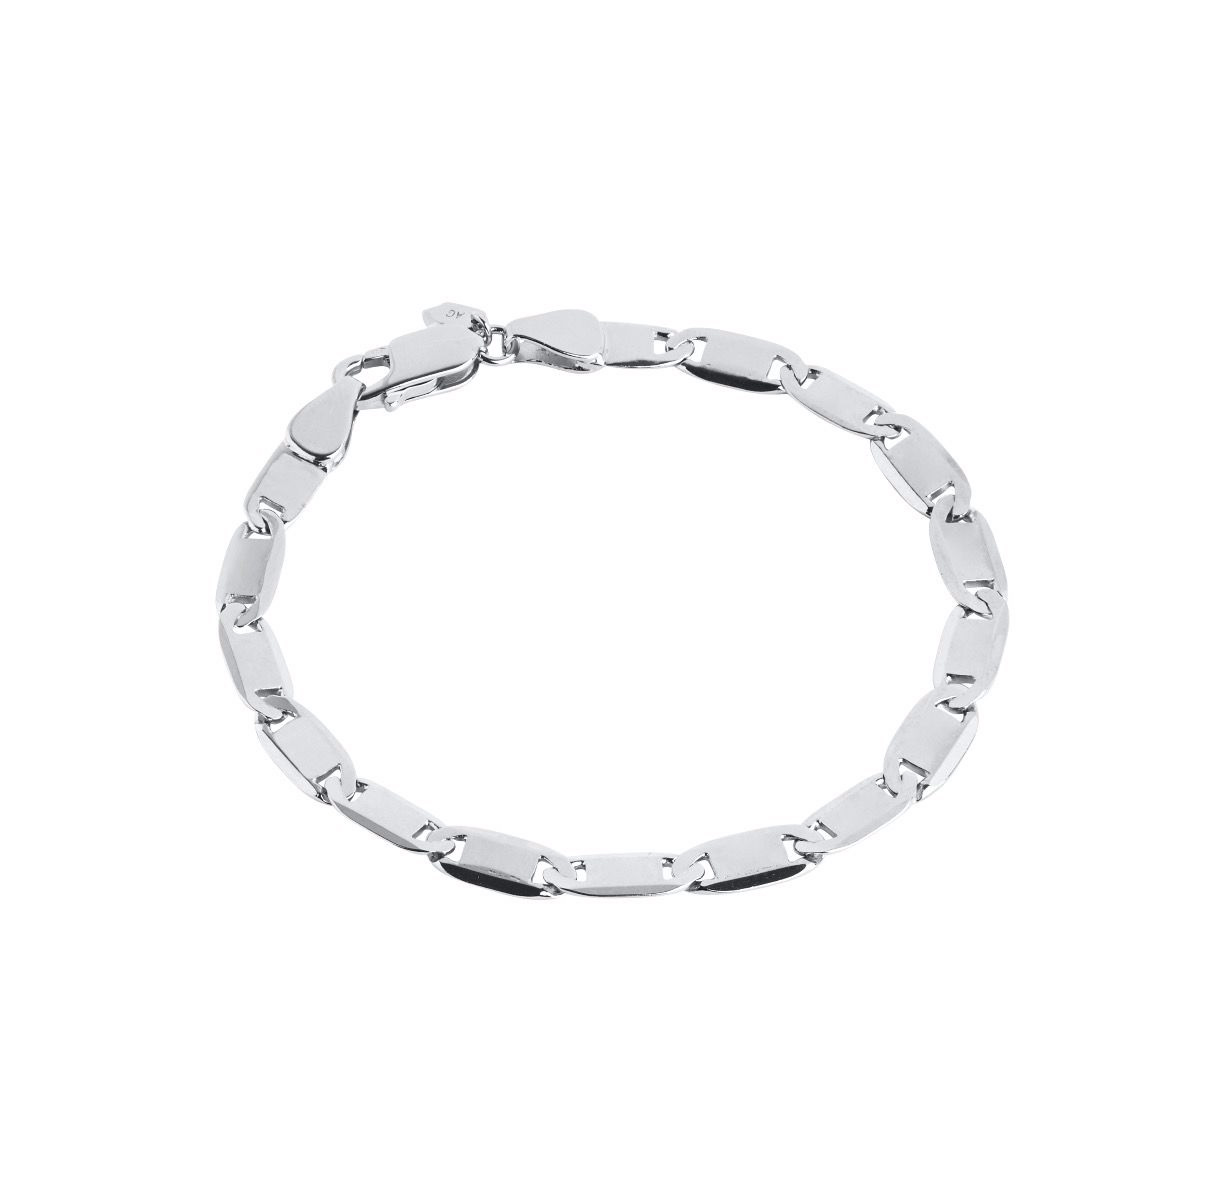 OEM/ODM ювелирные изделия на заказ оптовая продажа браслет из стерлингового серебра с заводом белого родия